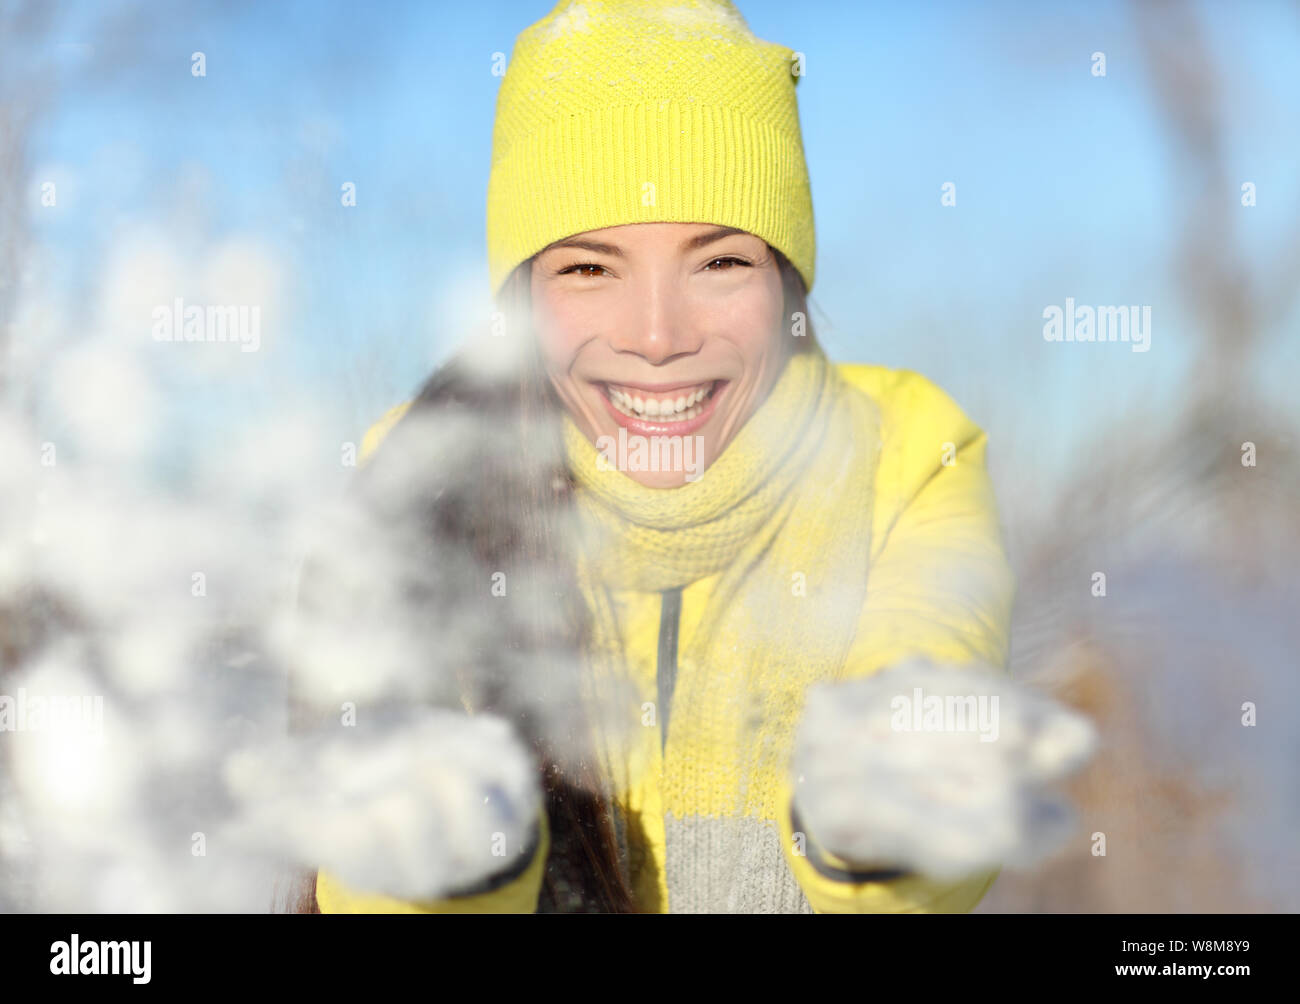 Winter fun girl throwing snow ludique au portrait de l'appareil photo. Asian woman face closeup avec beanie Knit hat jaune et gants blancs jouant avec des flocons de neige. Boule de lutte contre la neige hiver heureux concept. Banque D'Images